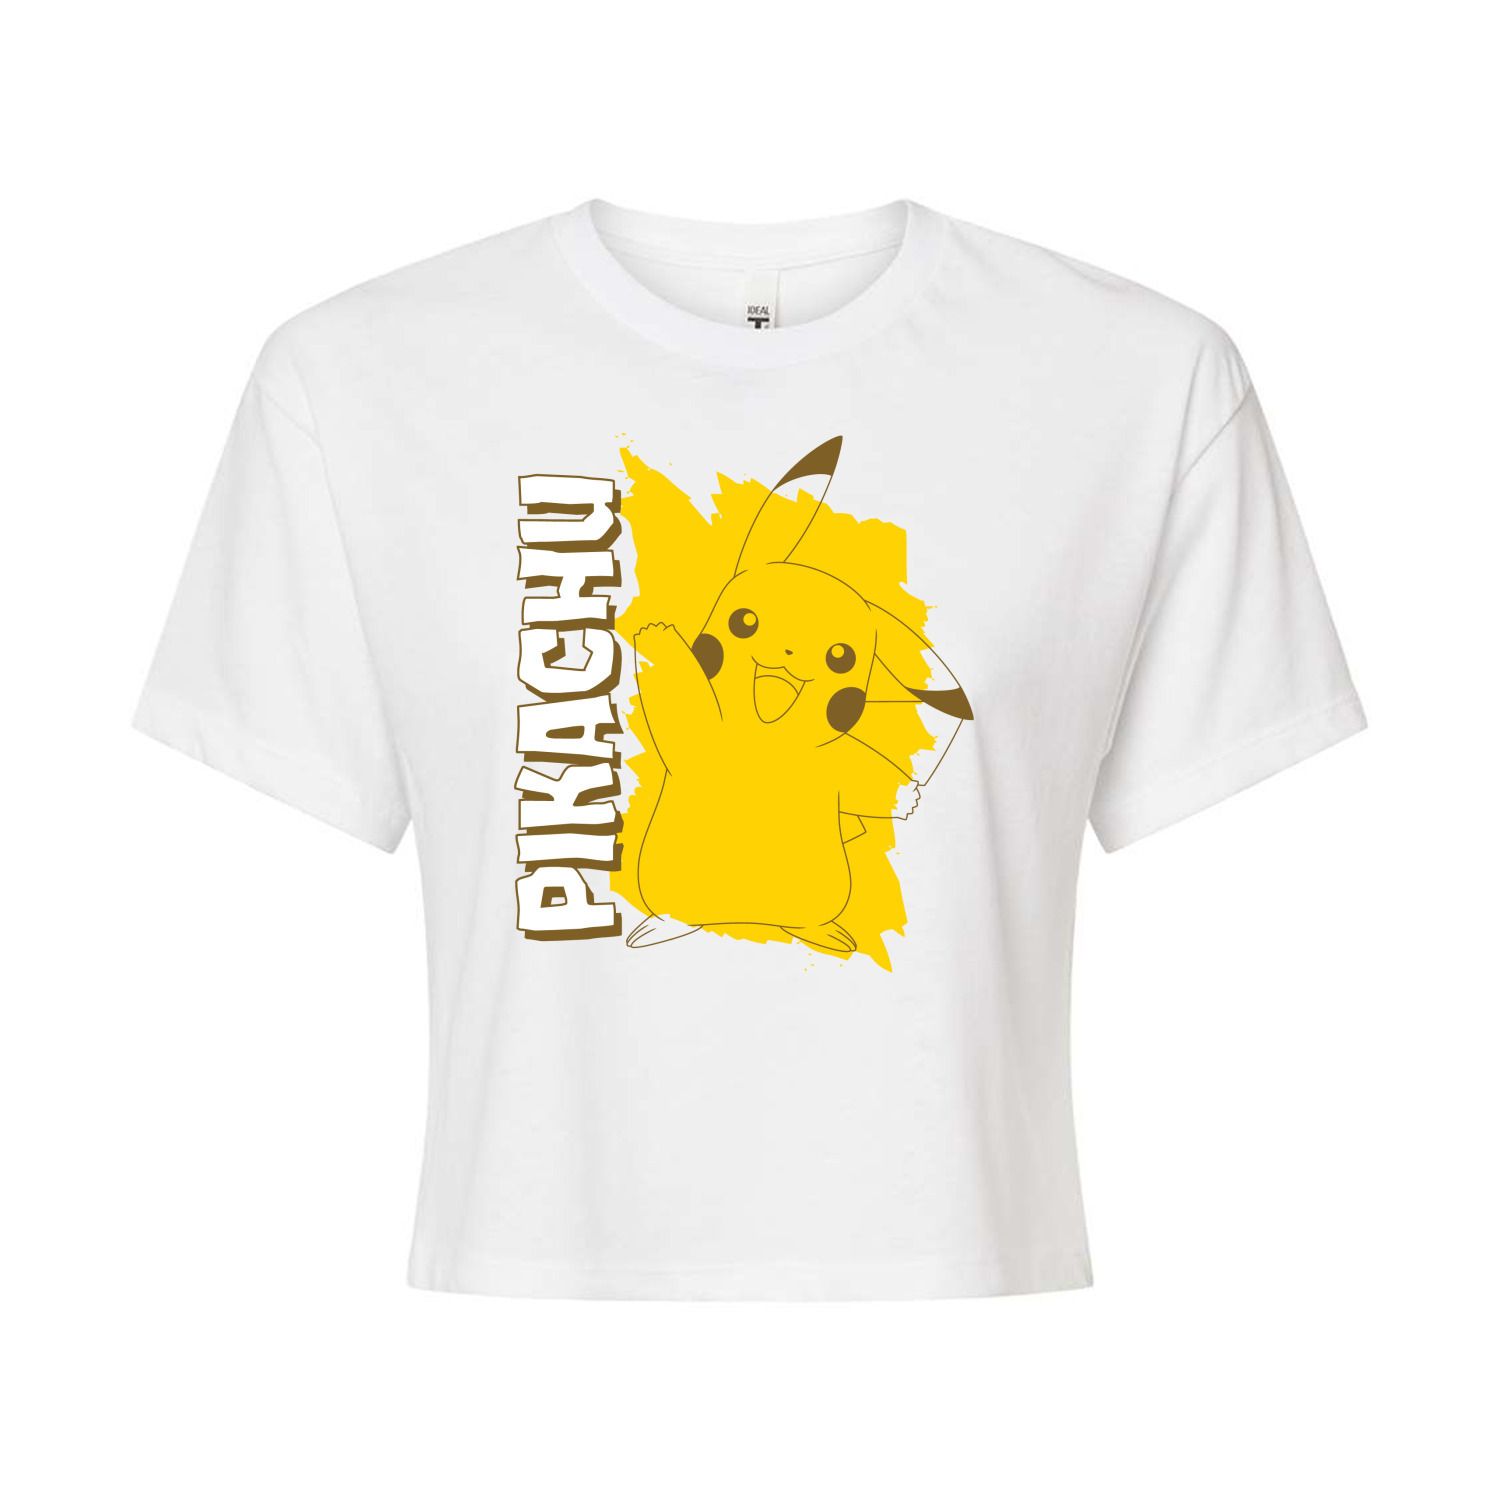 Укороченная футболка с рисунком Pokémon Pikachu для юниоров Licensed Character